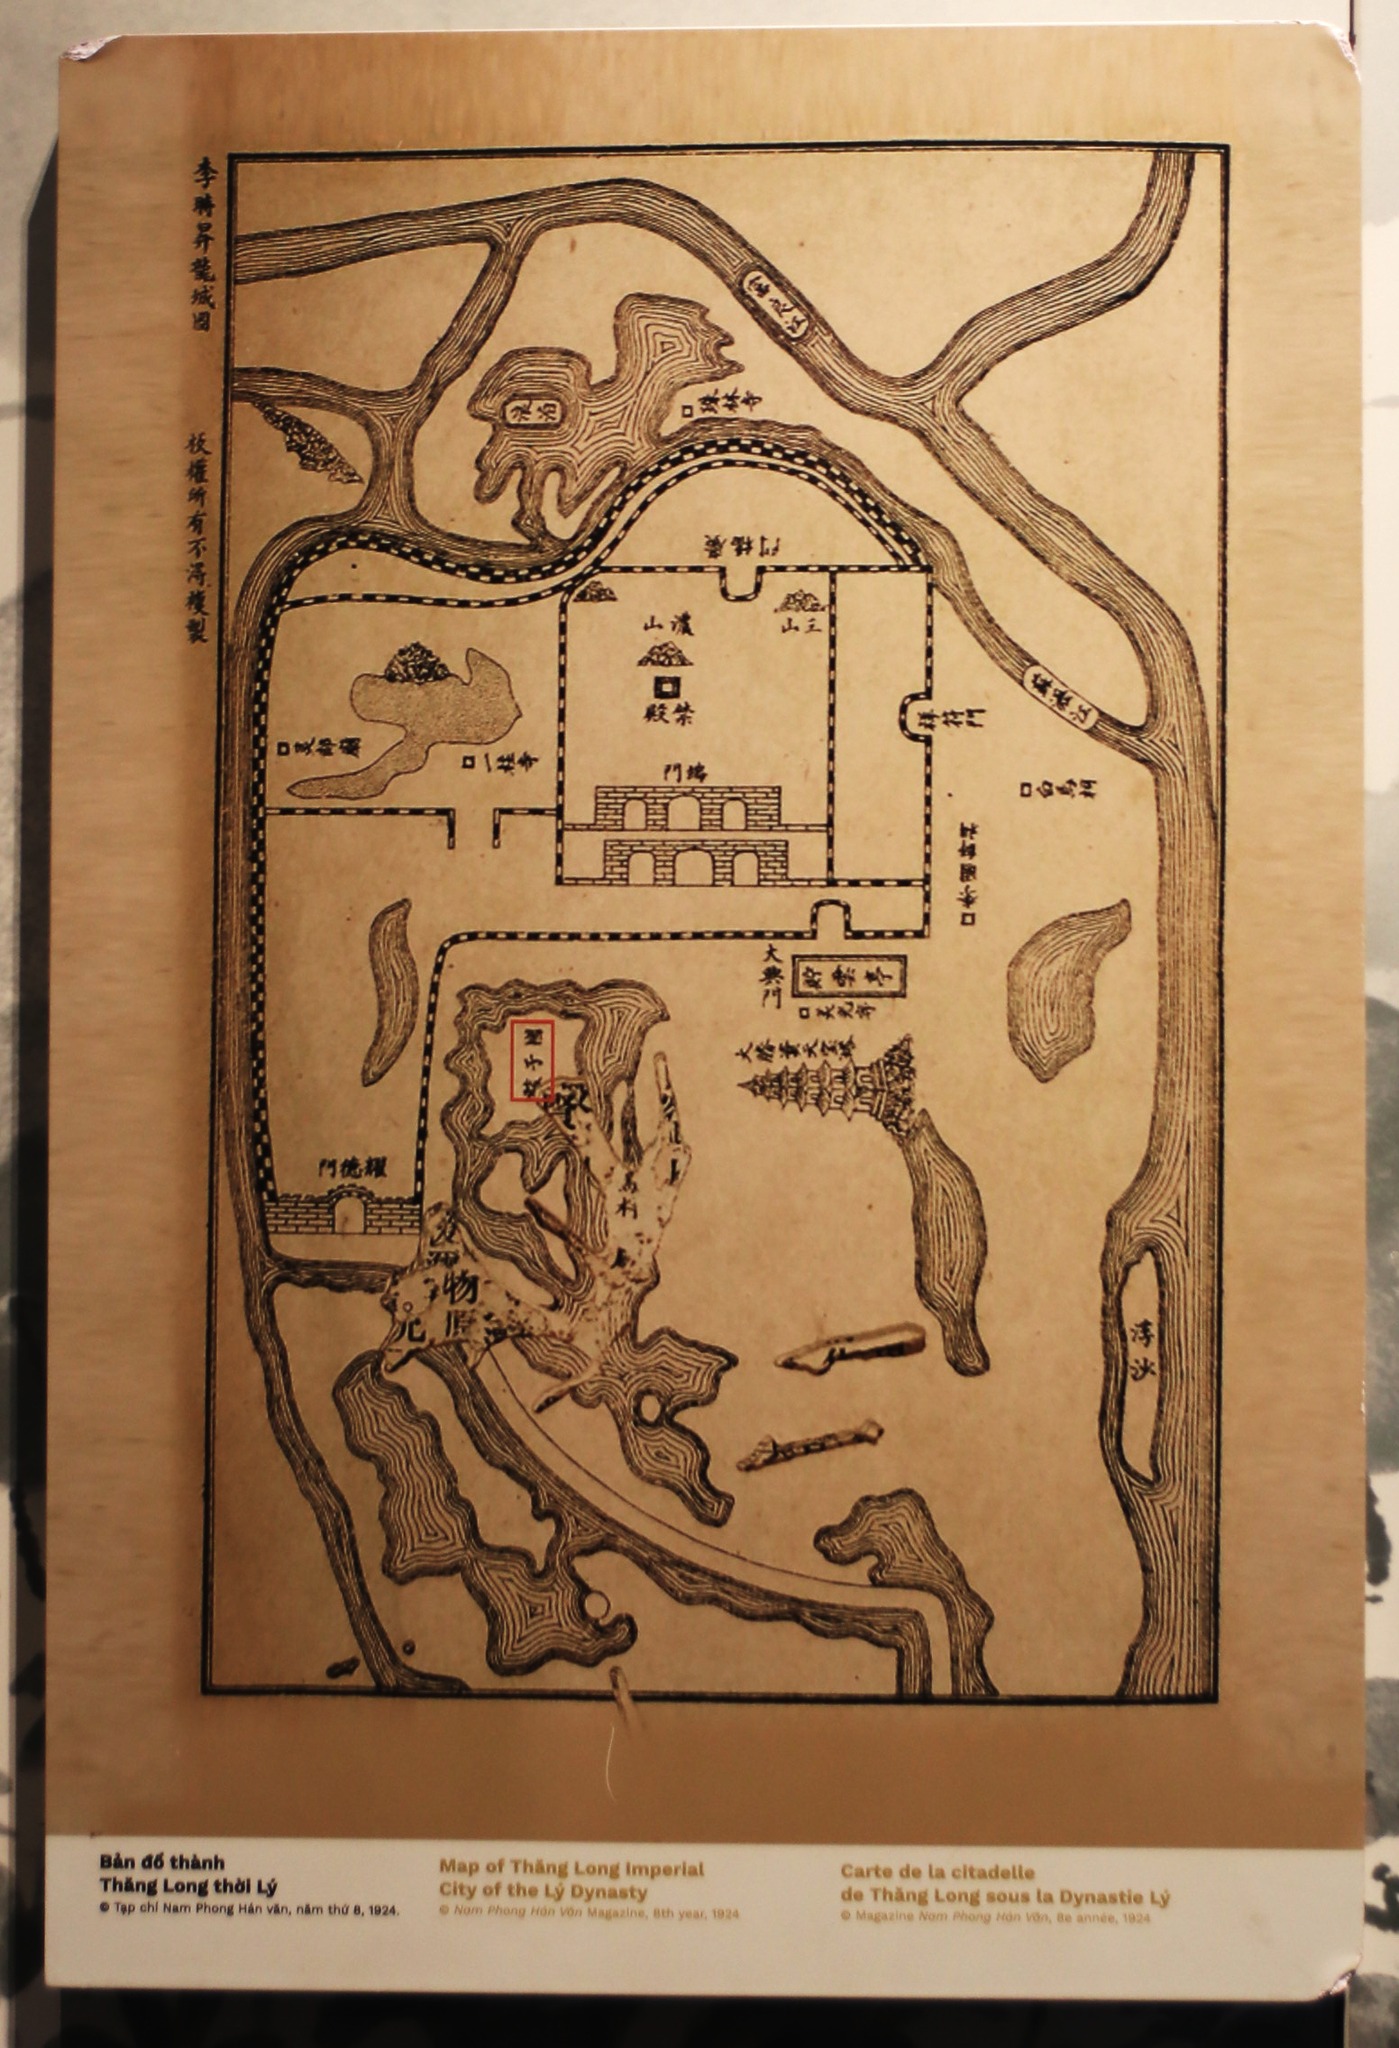 Bản đồ thành Thăng Long thời Lý